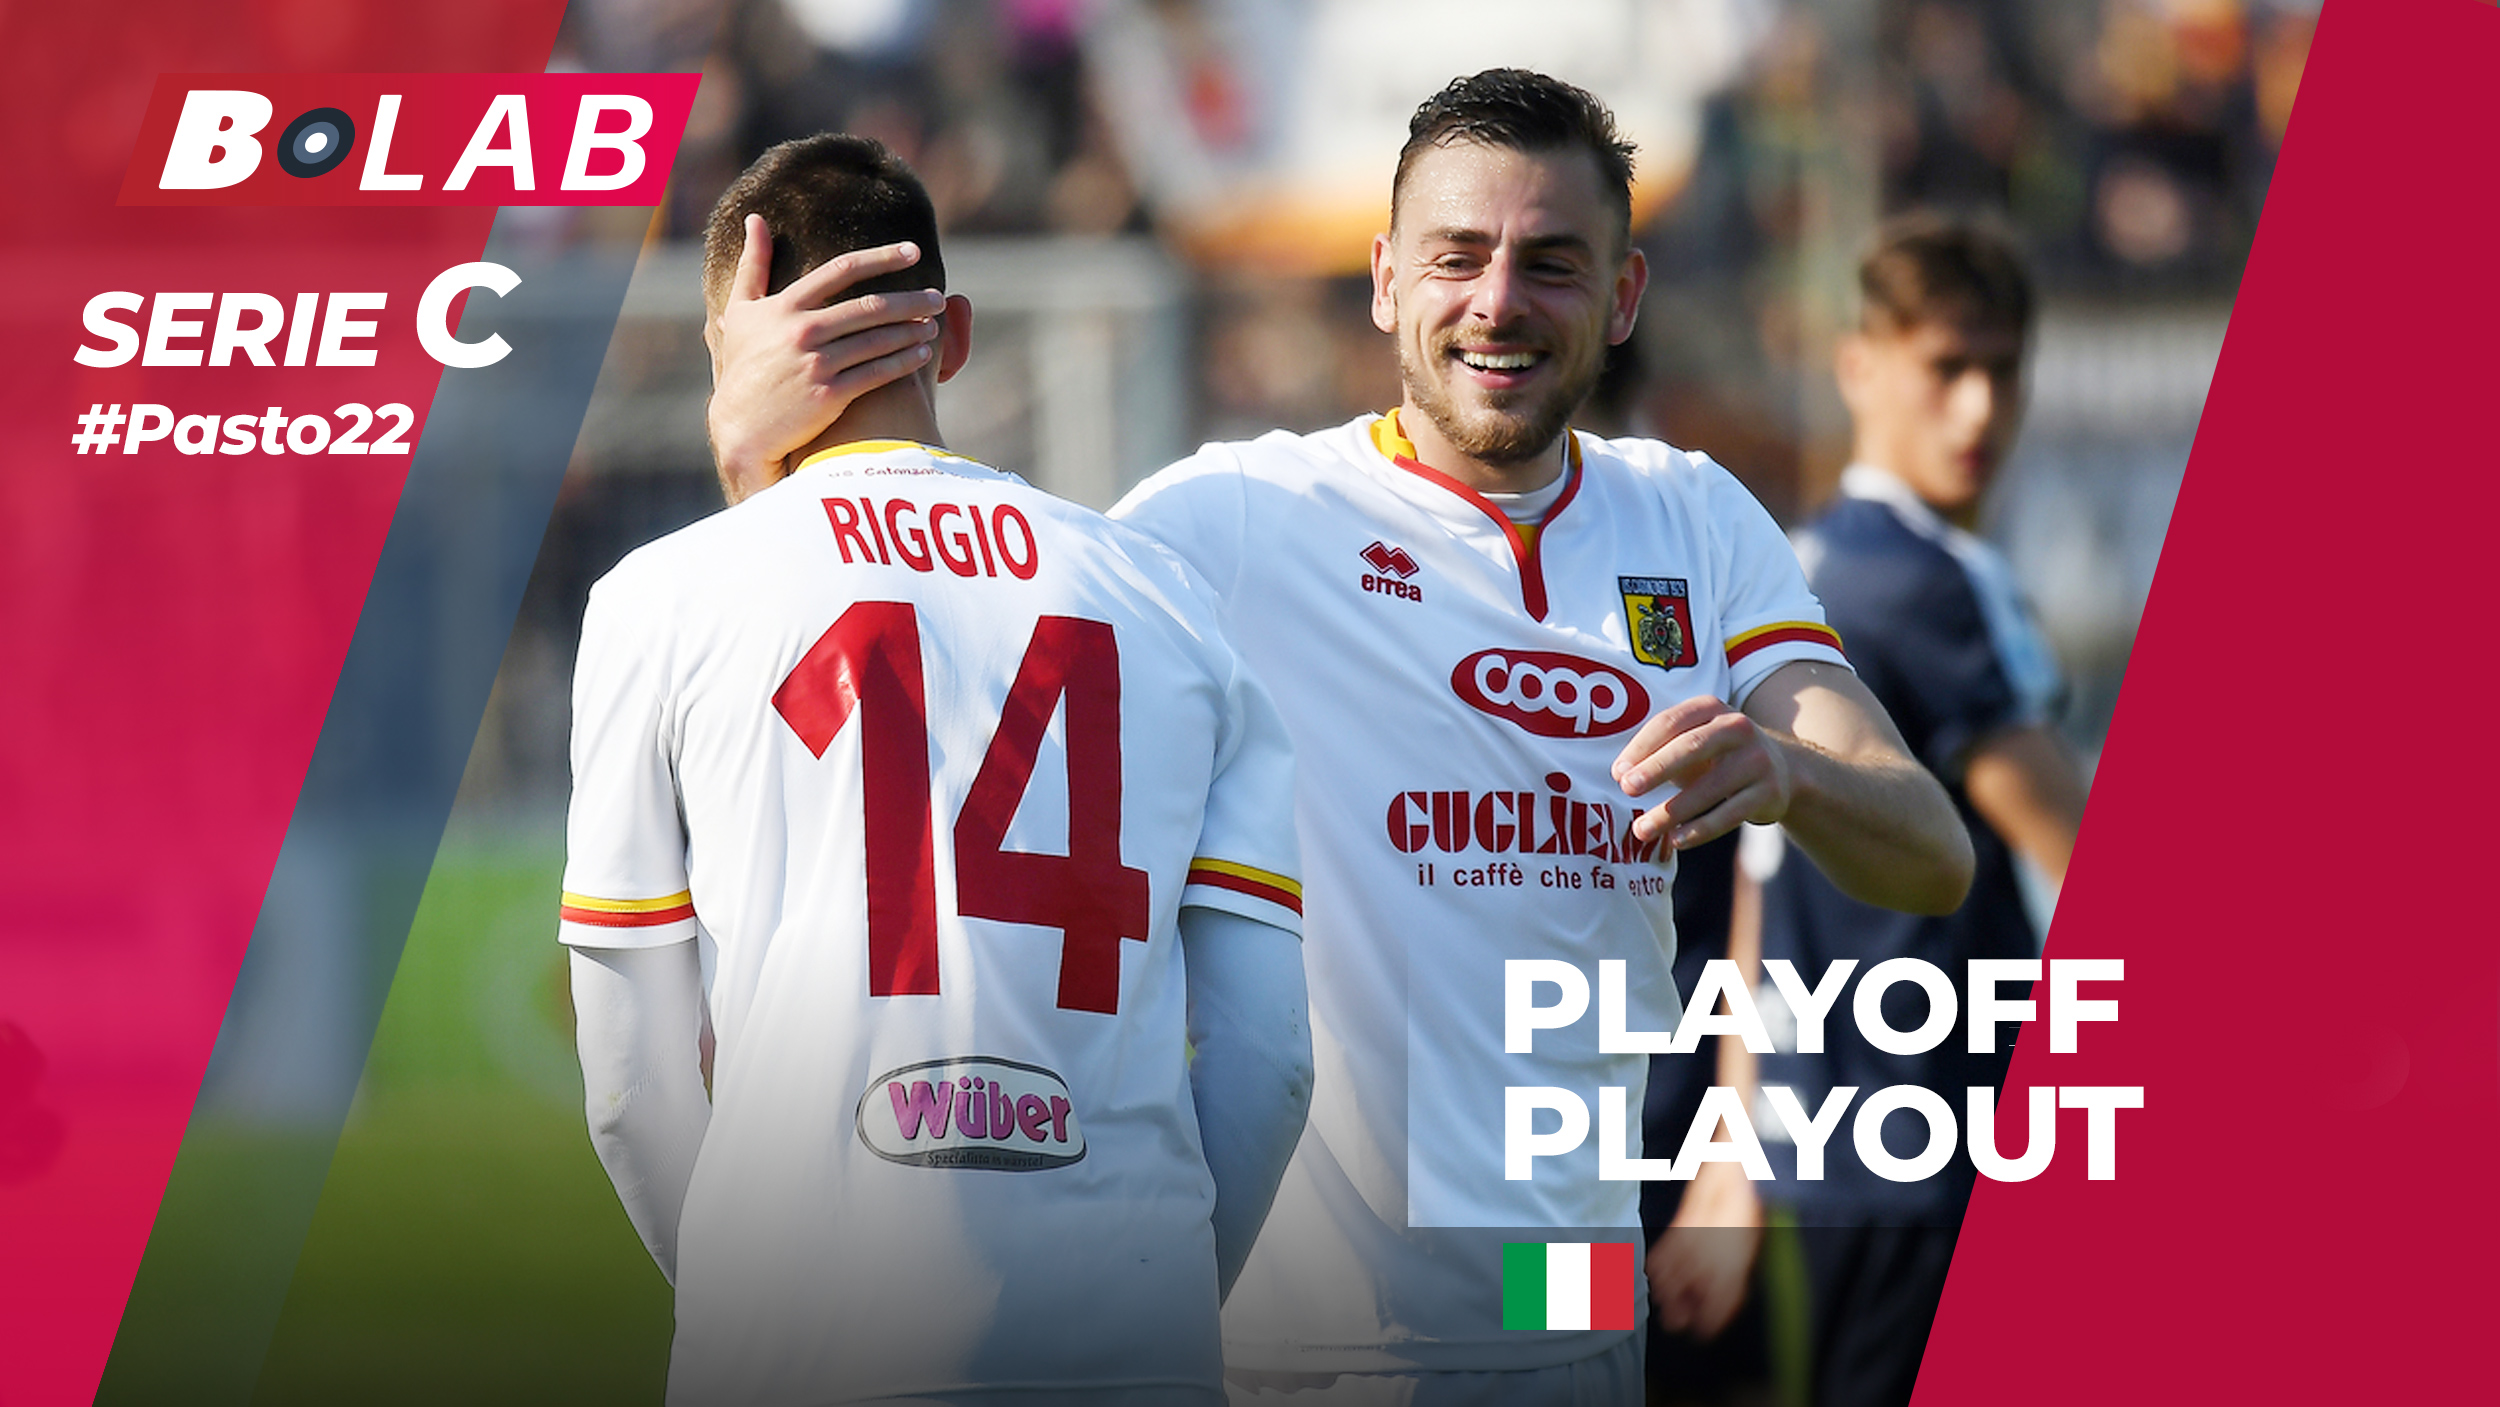 Pronostici Serie C playoff giornata 3 e playout: #Csiamo, blog di #Pasto22